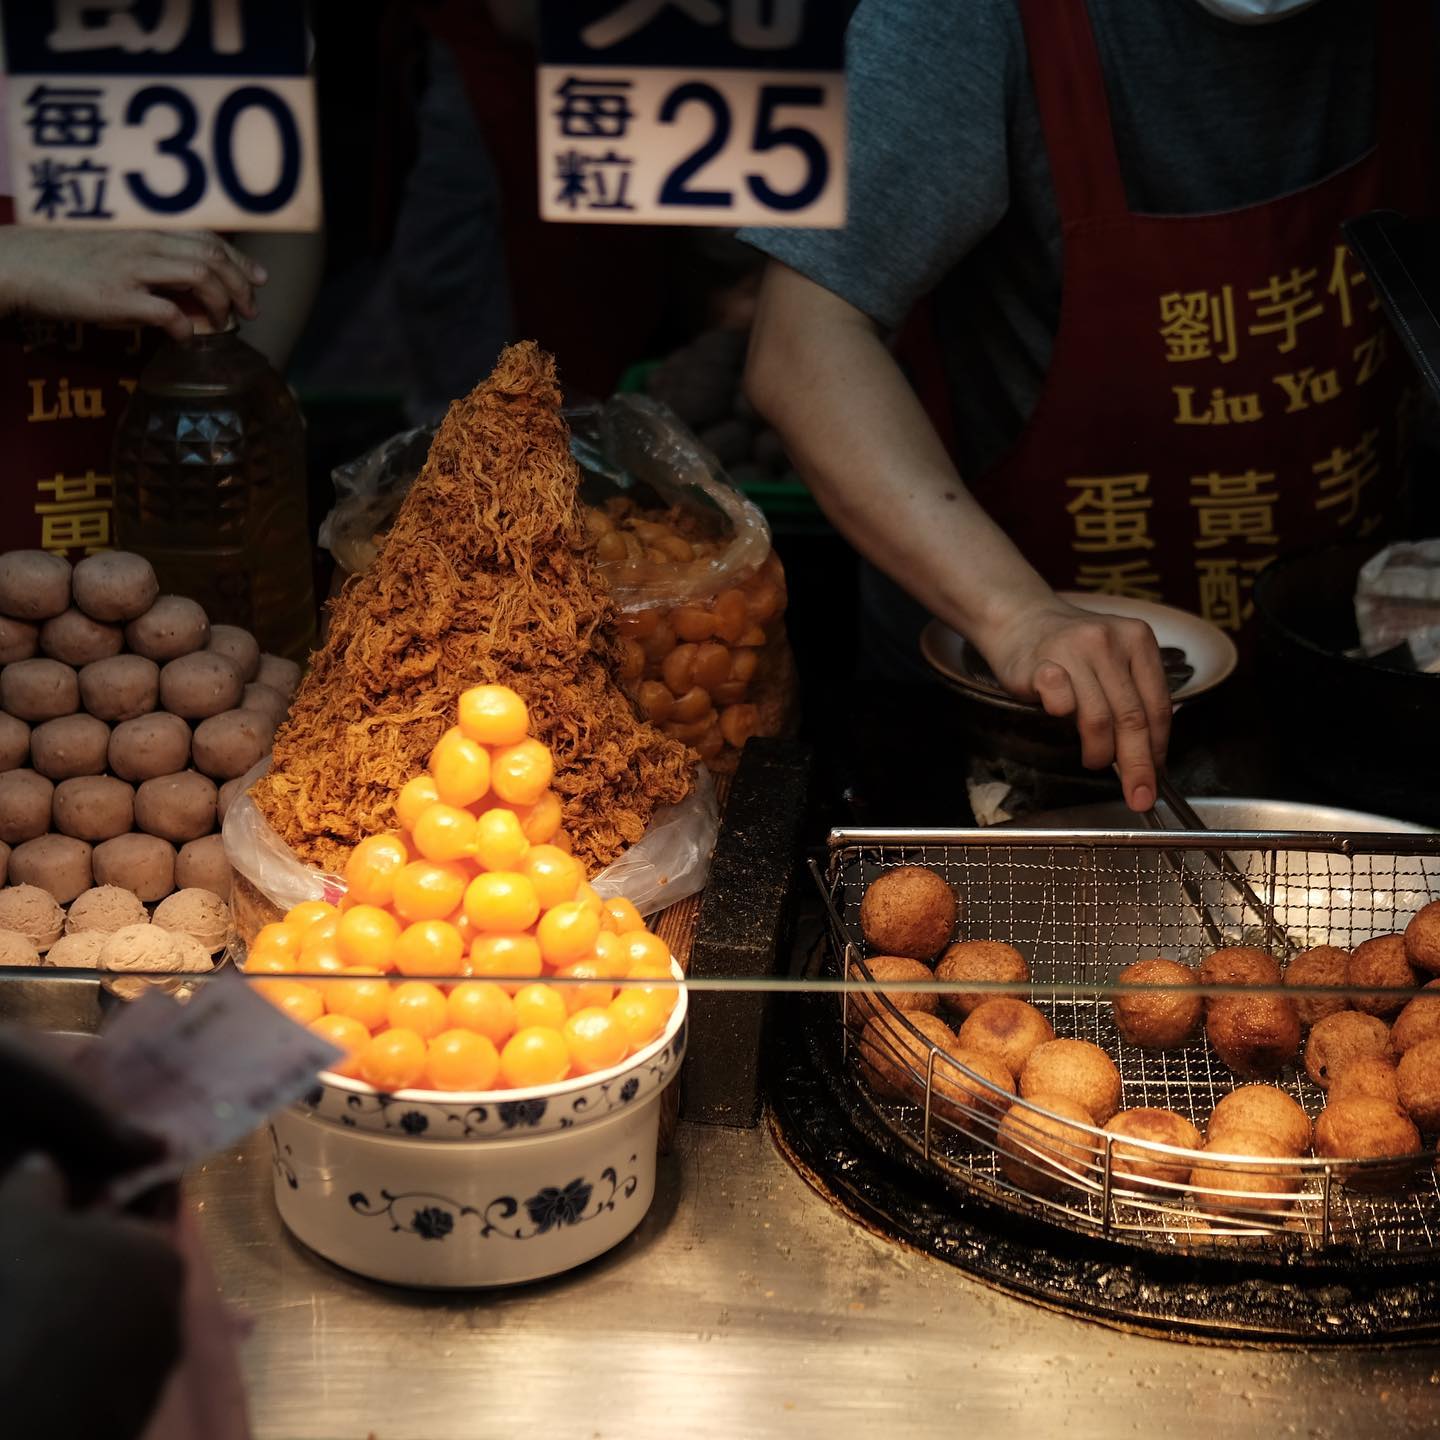 taipei things to do - taro balls liu yu zai ningxia night market